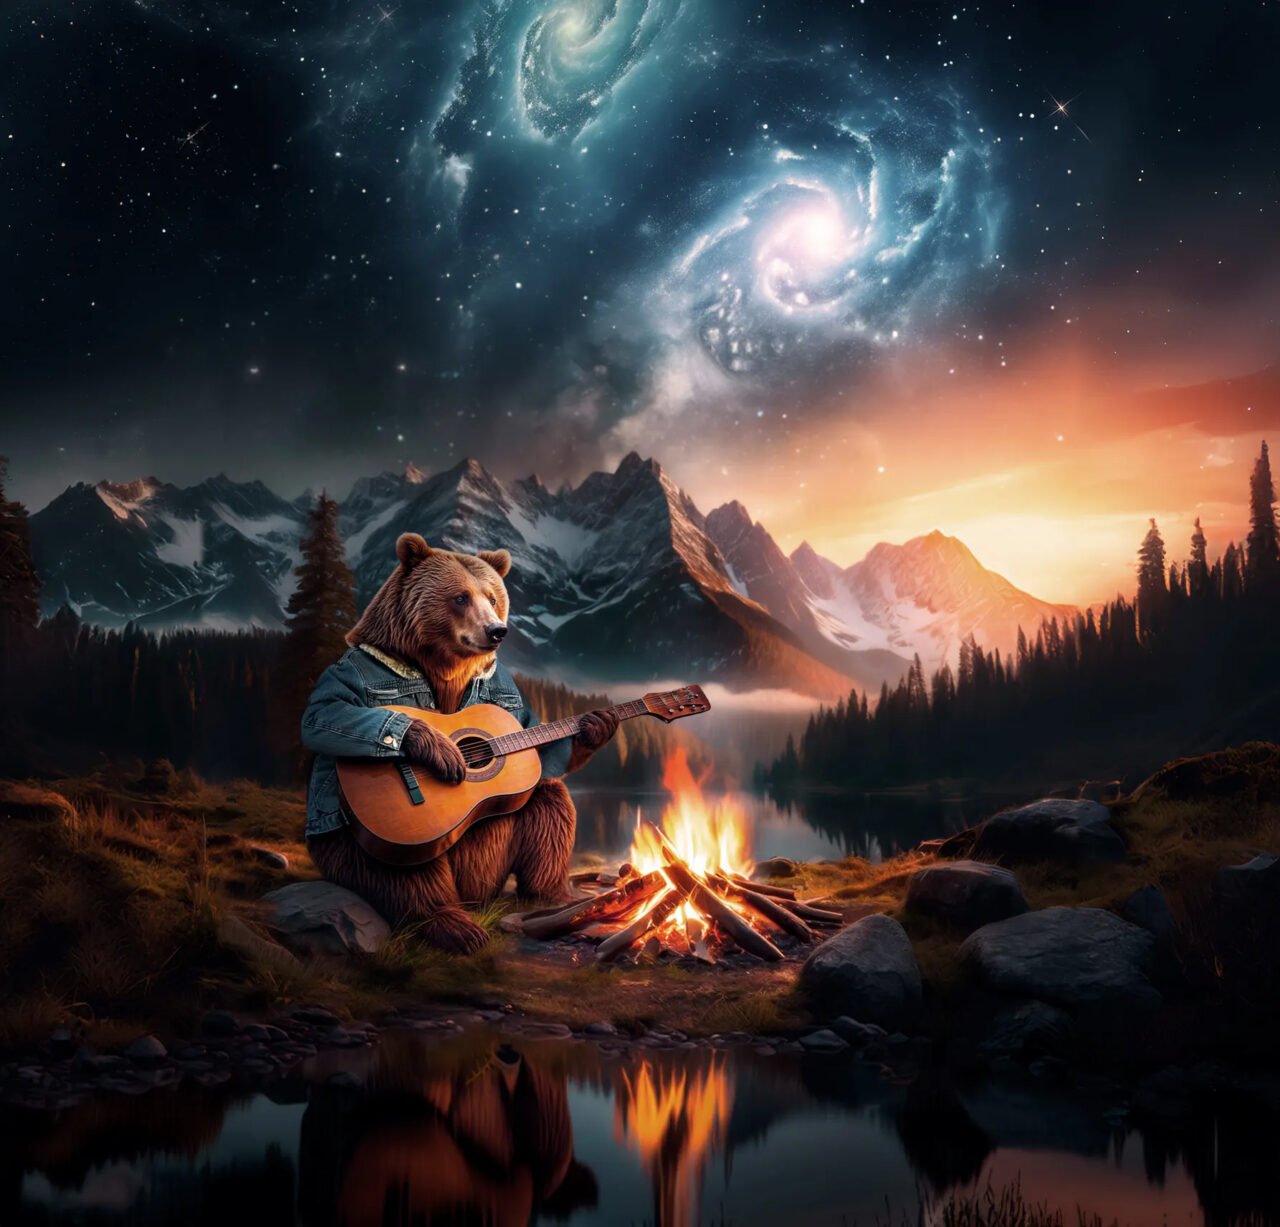 Niedźwiedź grający na gitarze przy ognisku z widokiem na górski krajobraz i kosmiczne galaktyki na nocnym niebie.